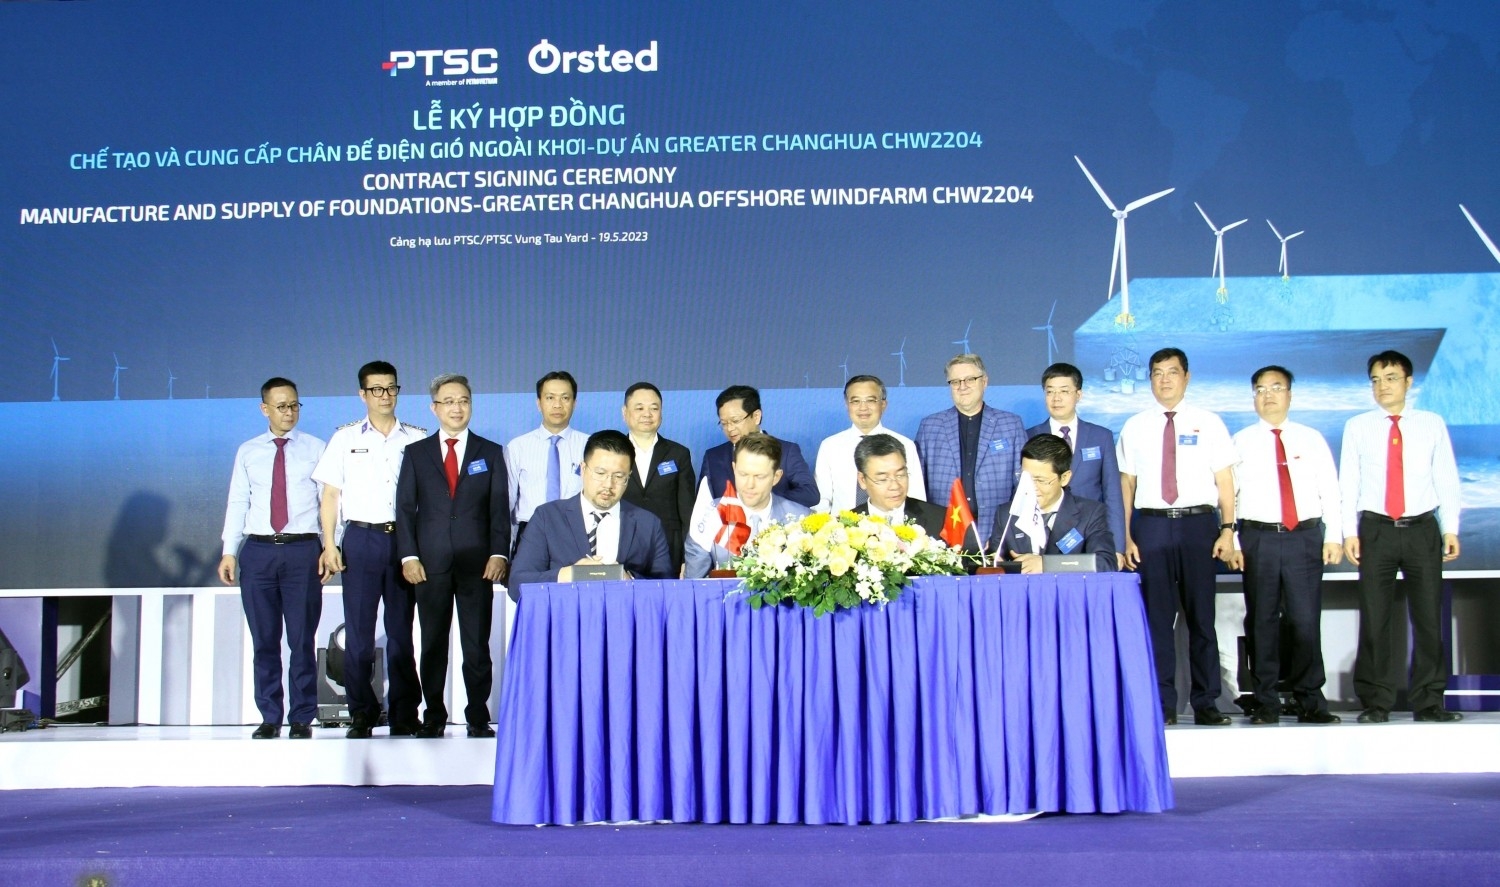 为中国台湾大彰化CHW2204 项目制造和供应海上风电基础垫层的合同签署仪式。